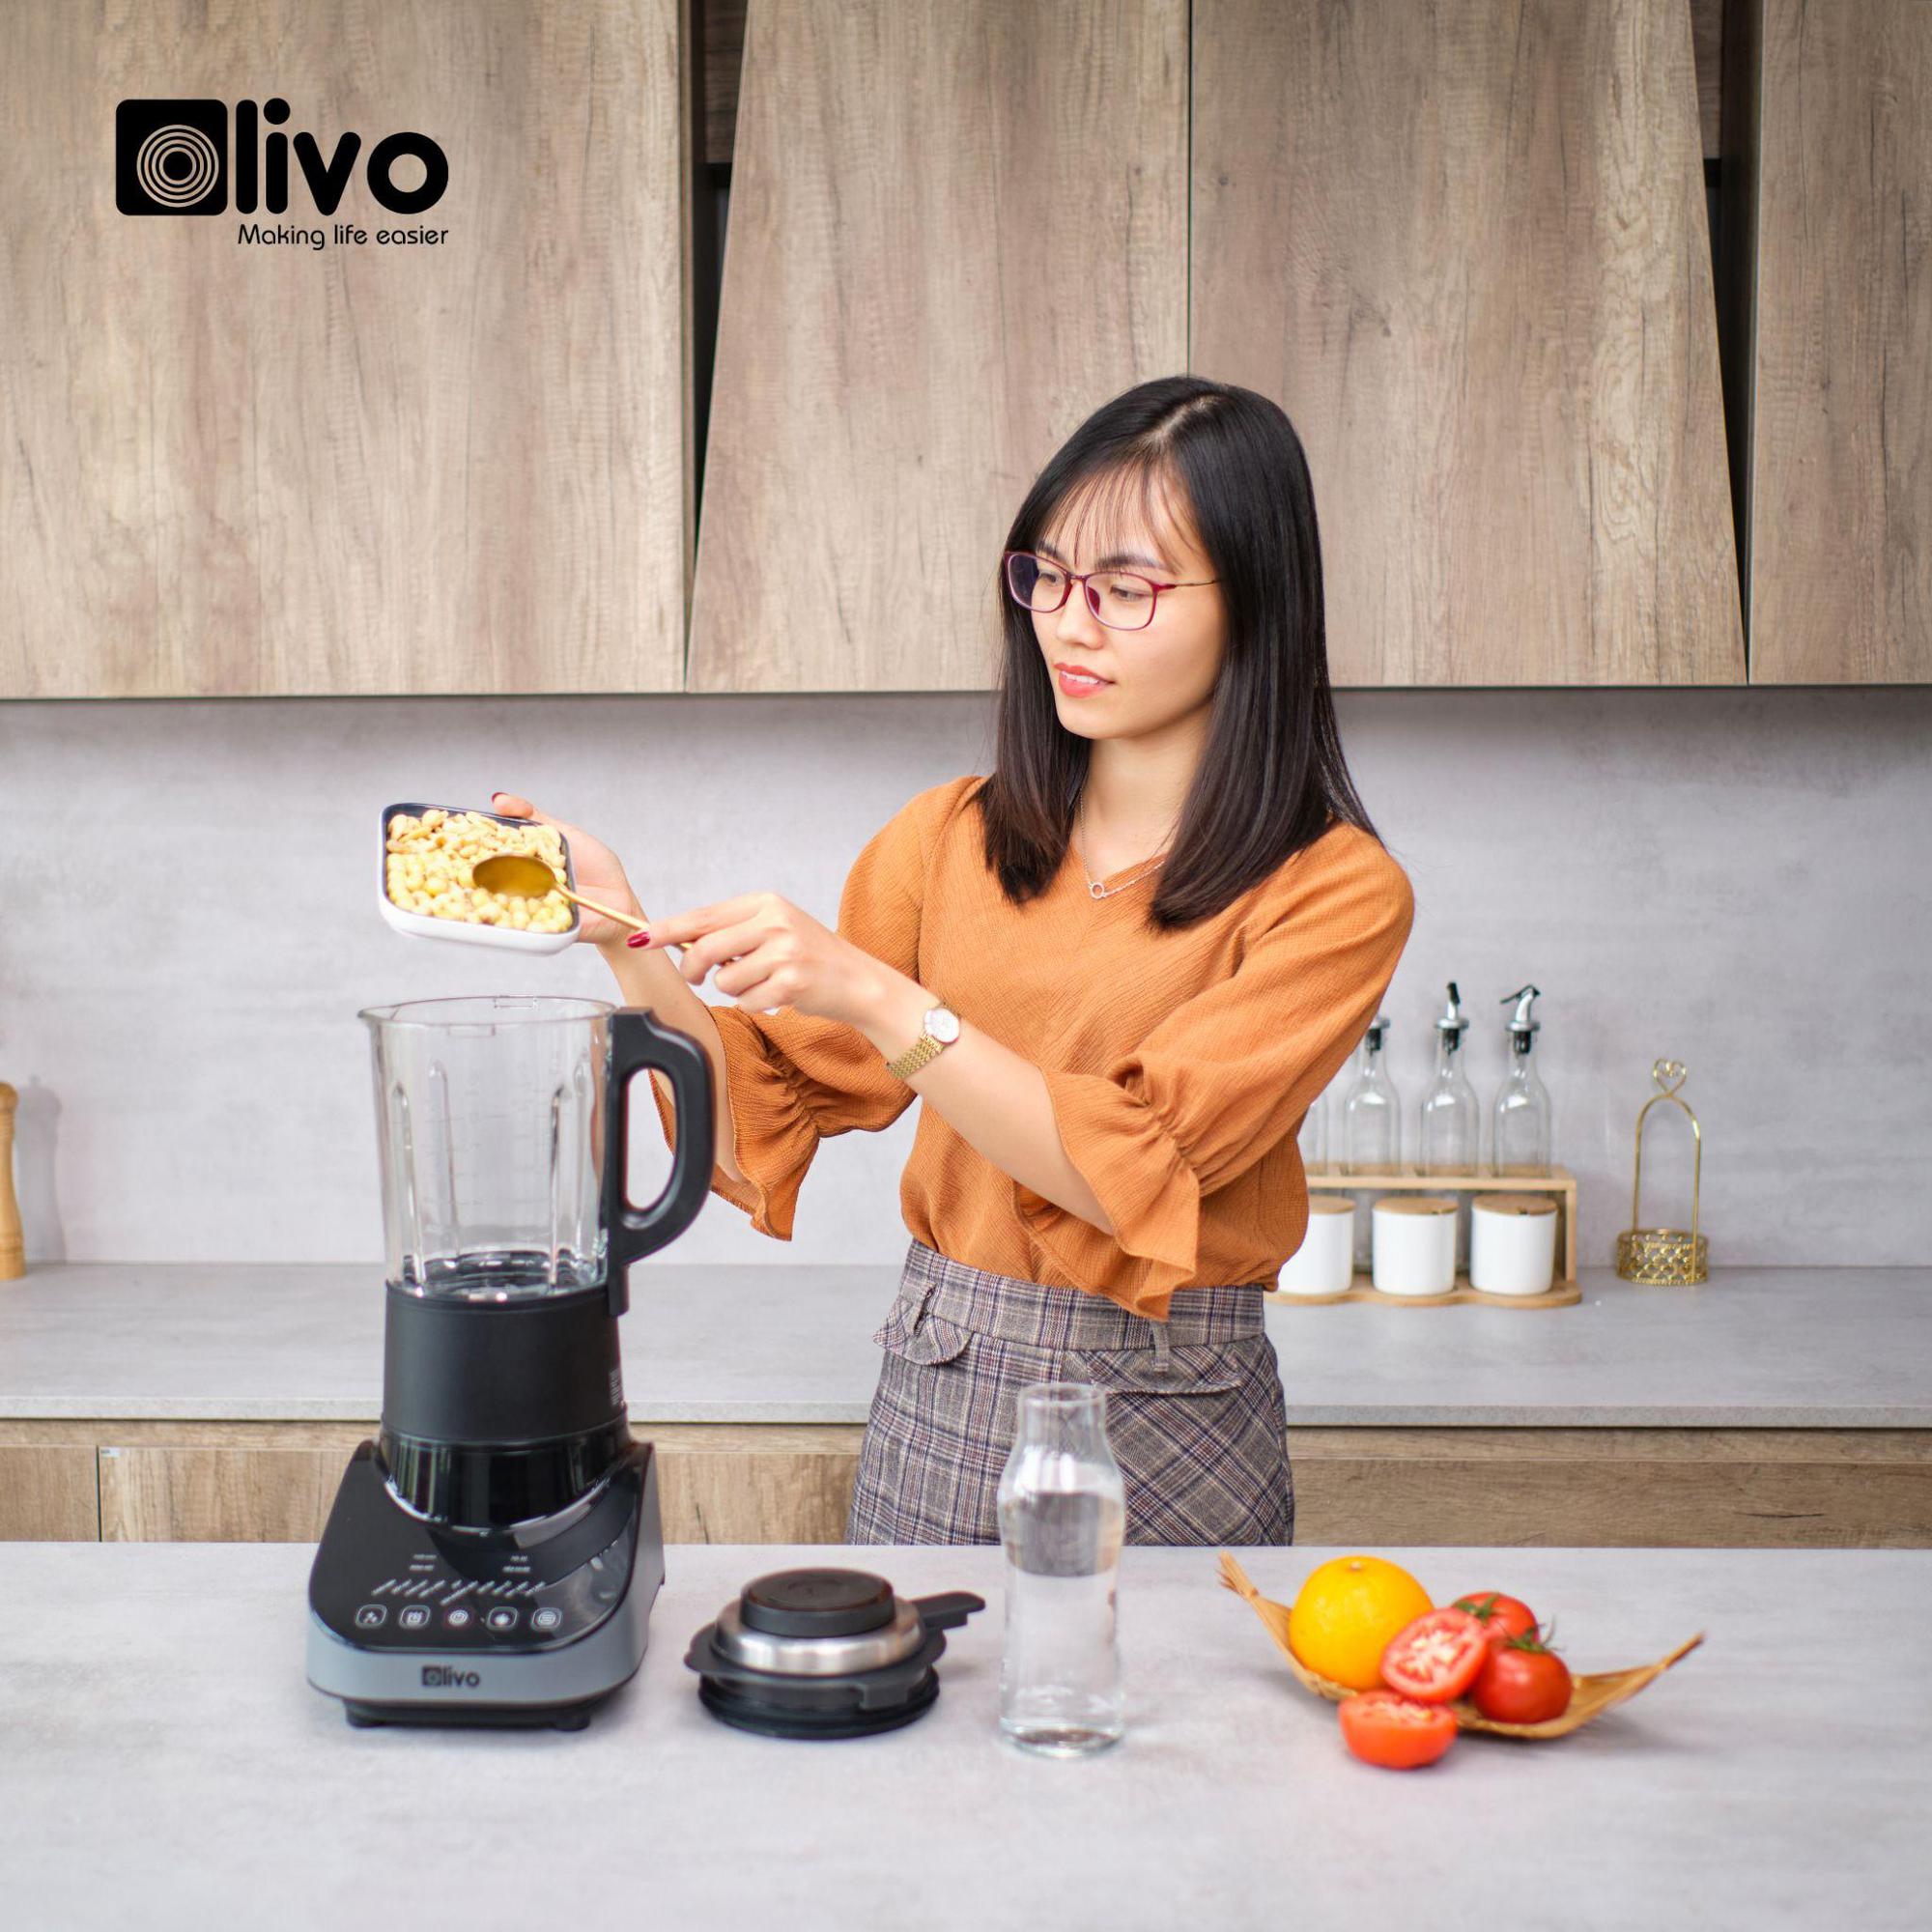 Máy làm sữa OLIVO CB20 - Giúp mẹ xay nấu sữa hạt tại nhà nhàn tênh - Ảnh 1.